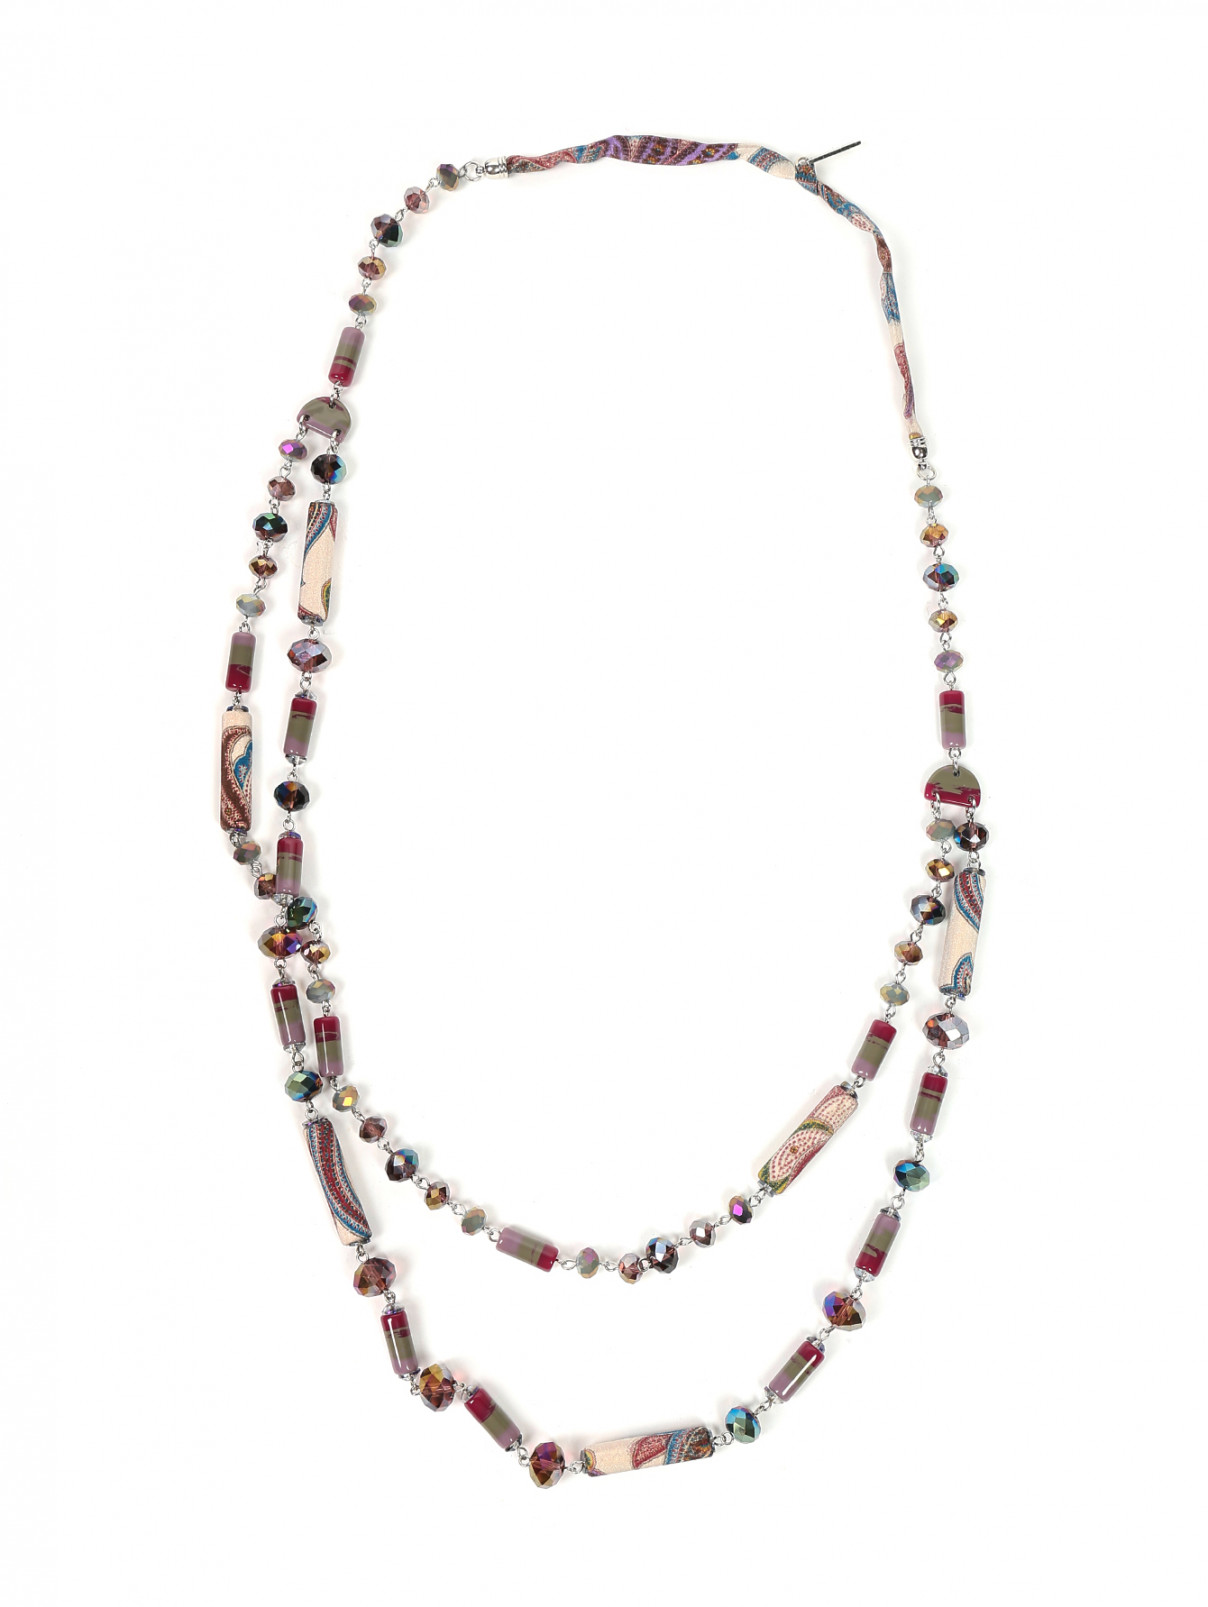 Ожерелье из шелка и стекла с узором "пейсли" Etro  –  Общий вид  – Цвет:  Узор